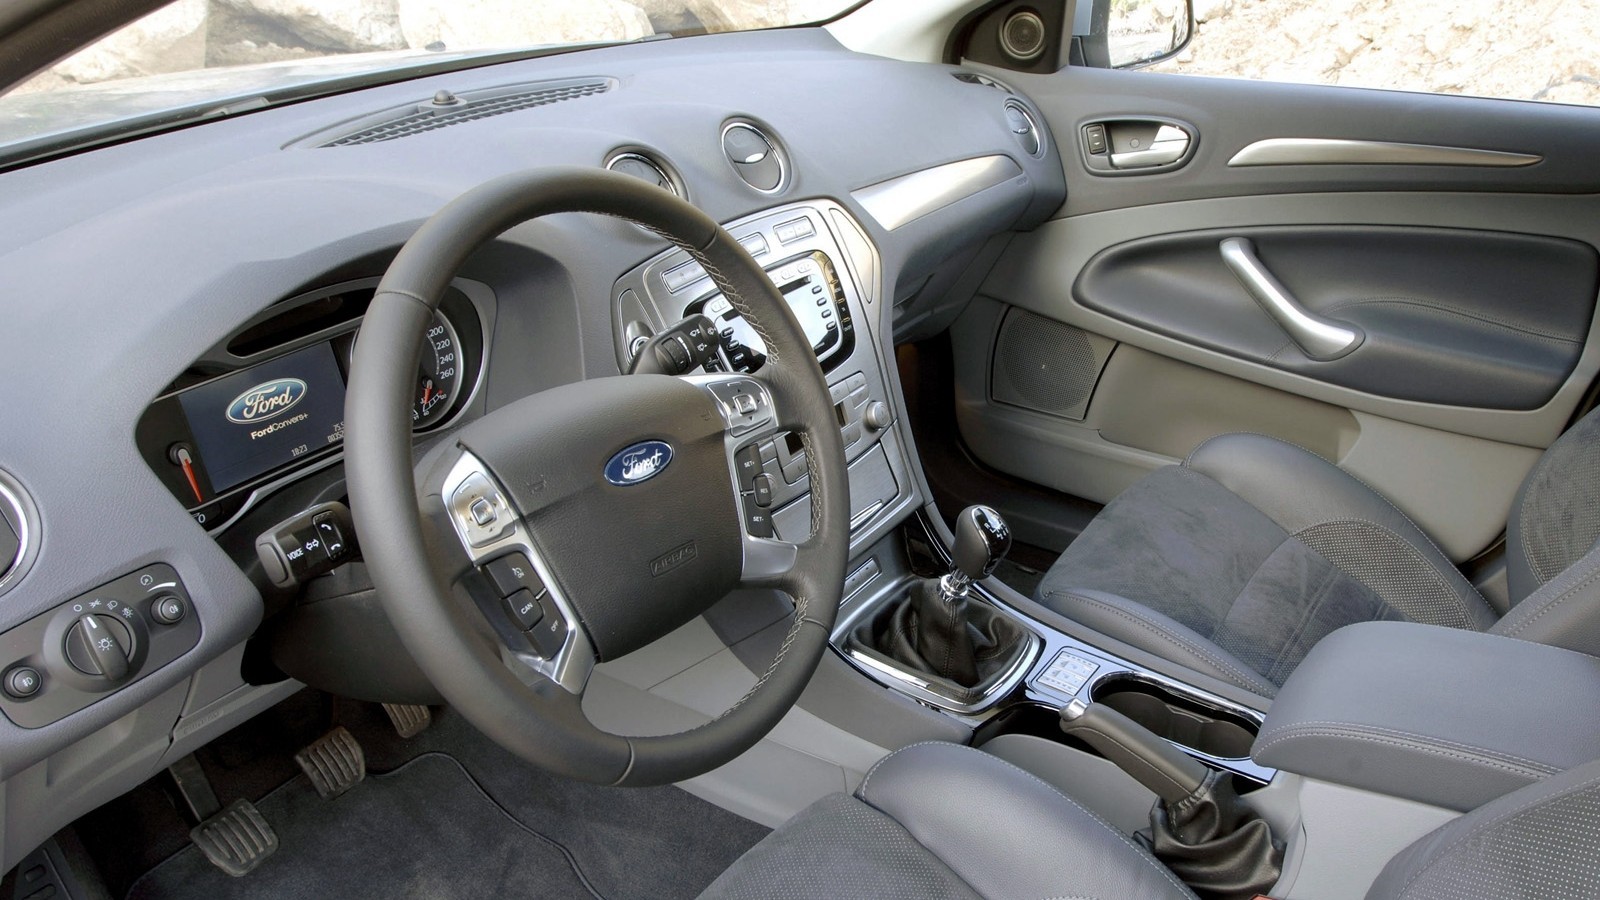 Ford Mondeo Hatchback 